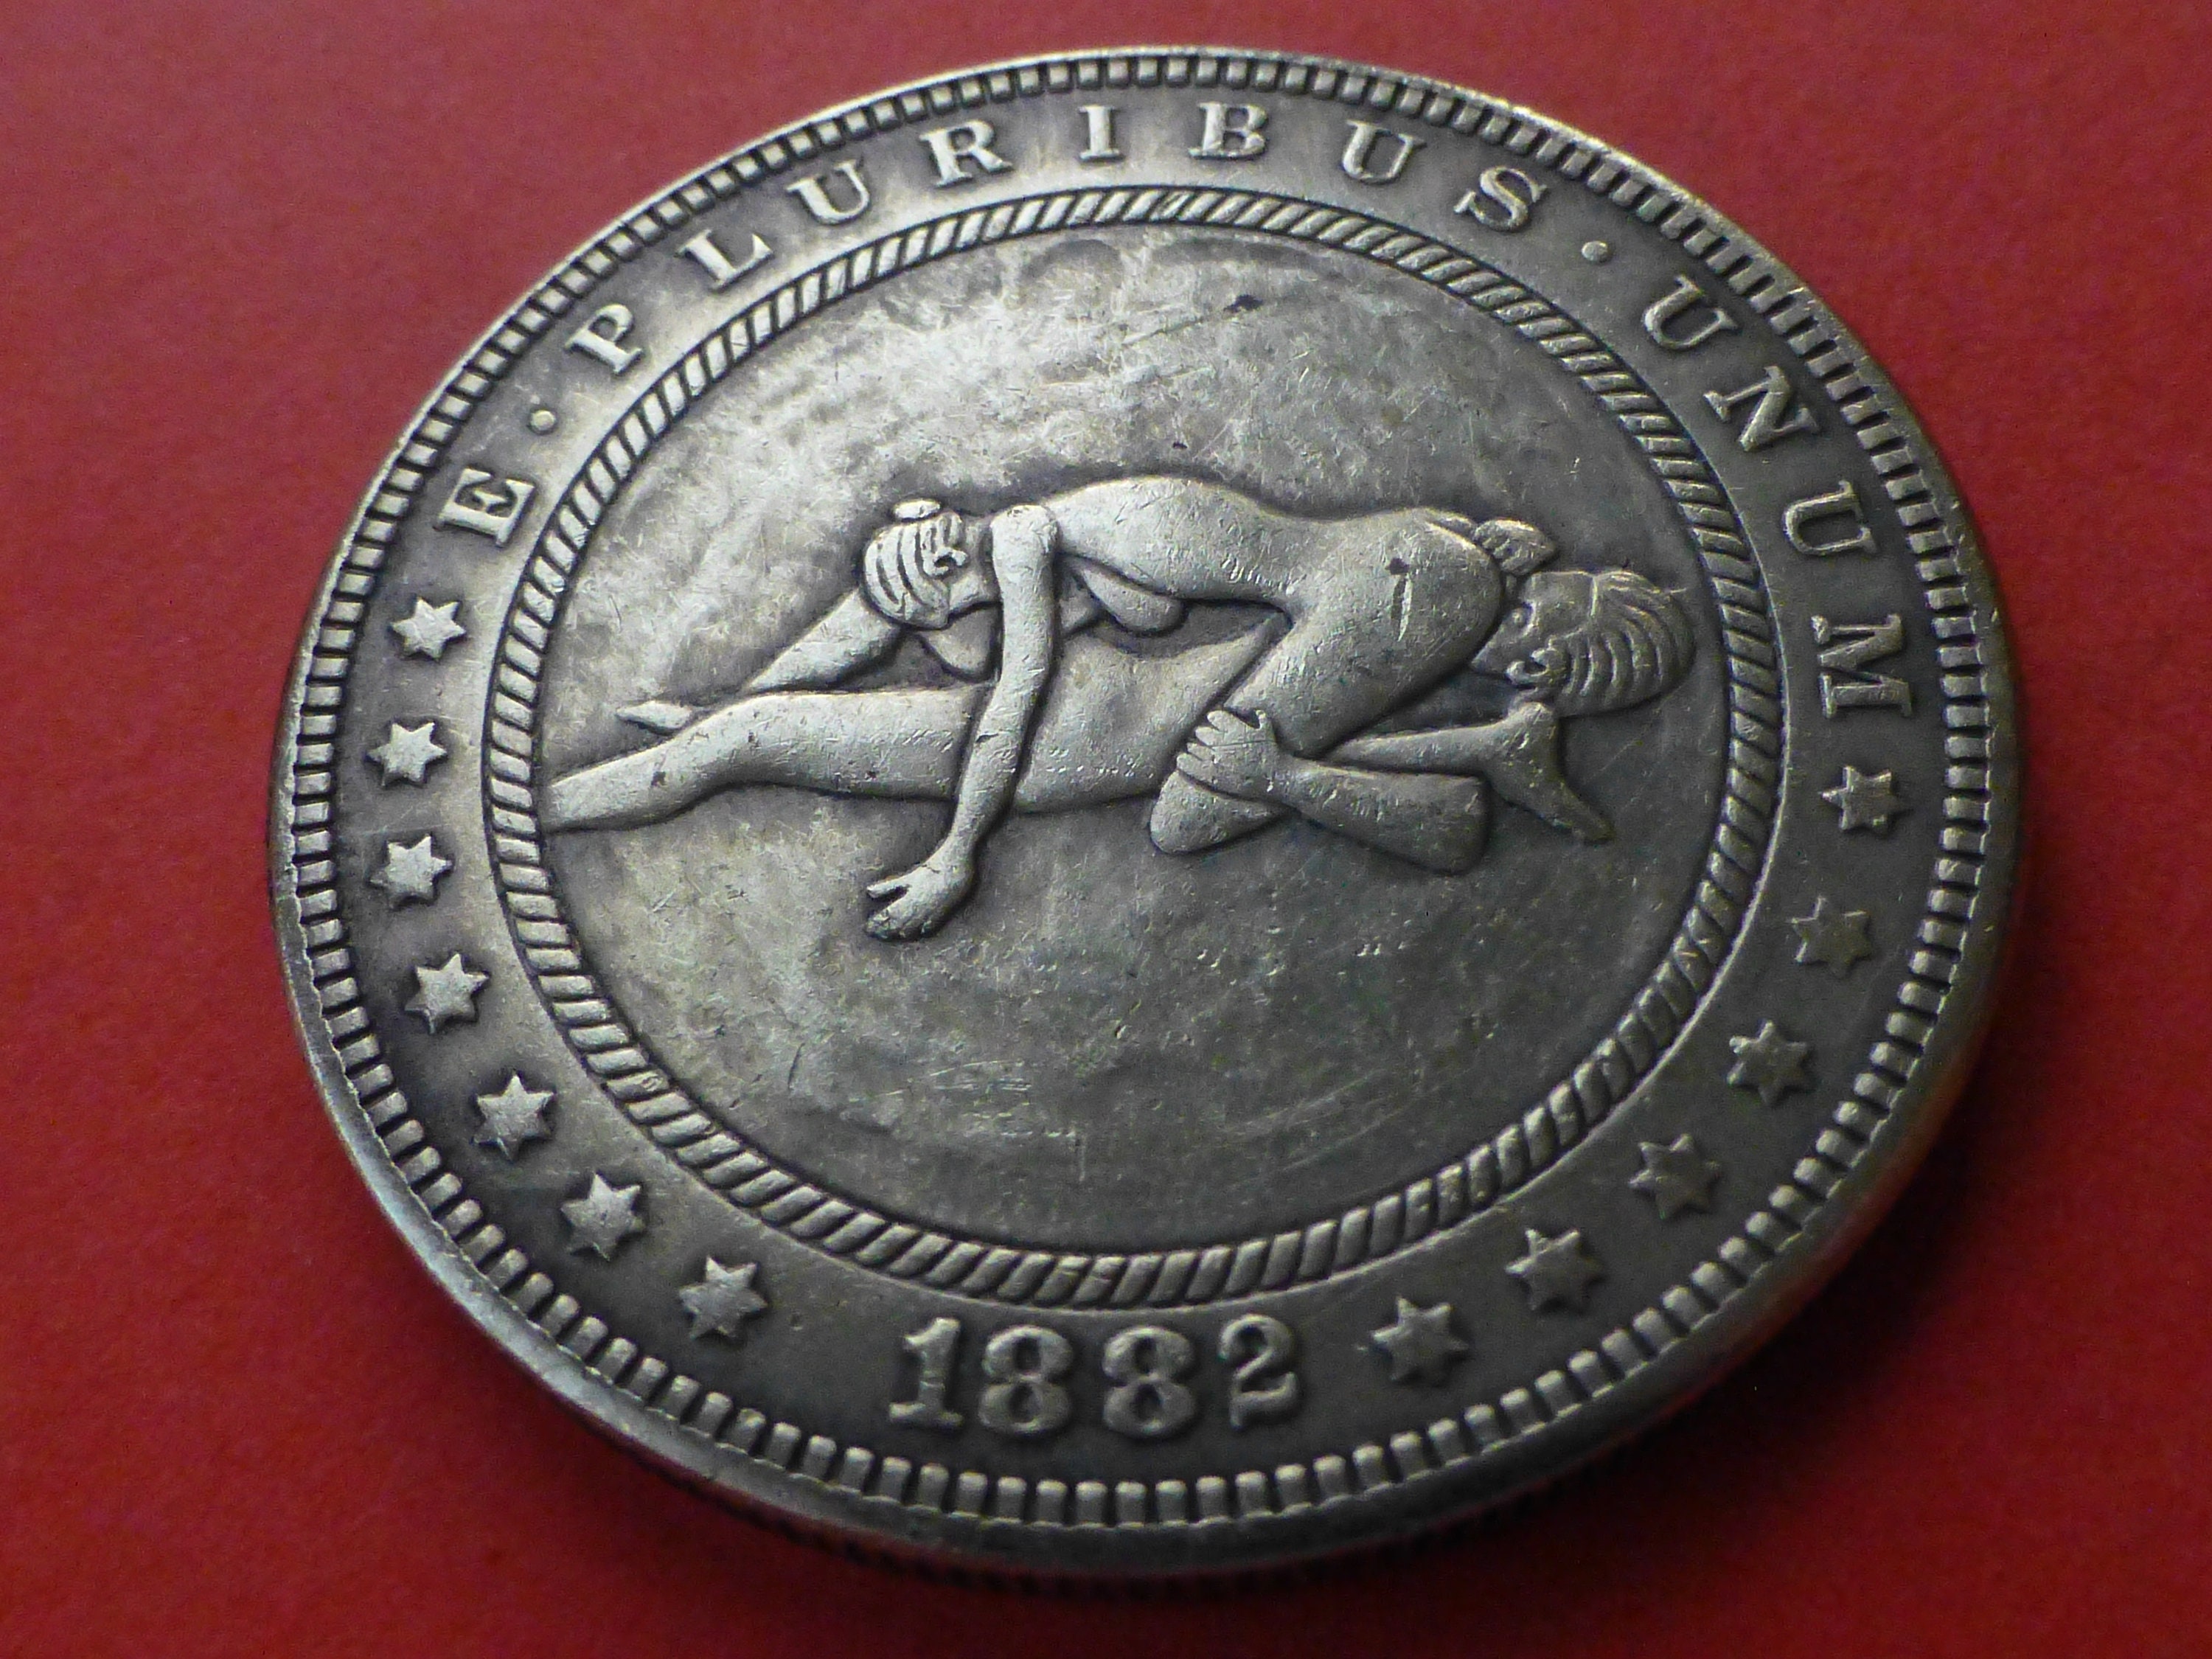 1882 Hobo Dollar Coin Naked Couple Having Fun 69